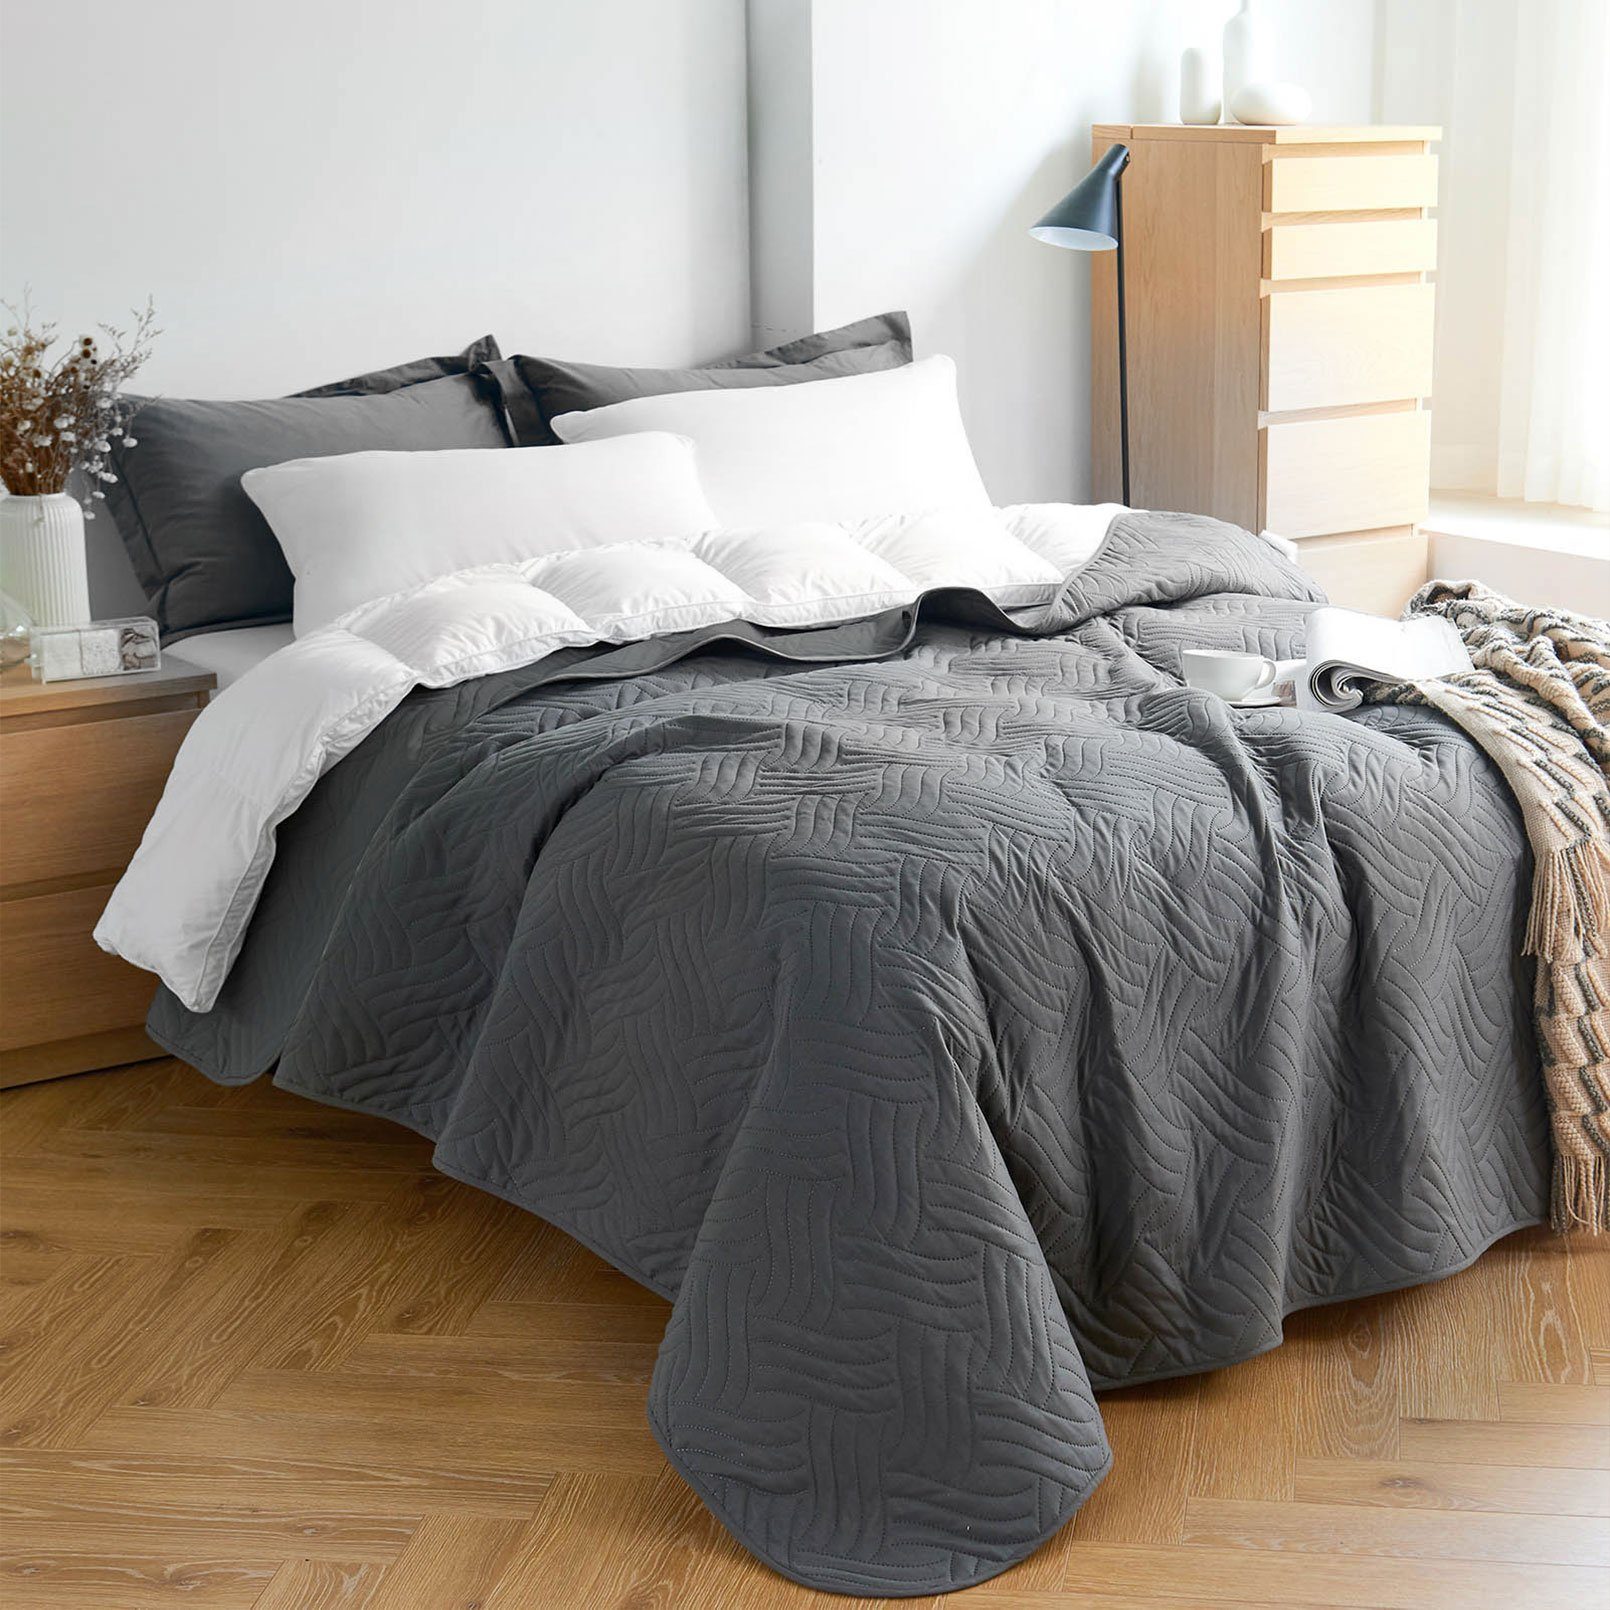 Tagesdecke TD, KEAYOO, aus 100% Kunstfaser, Bettüberwurf für Einzelbetten oder Doppelbetten DunkelgrauWelle